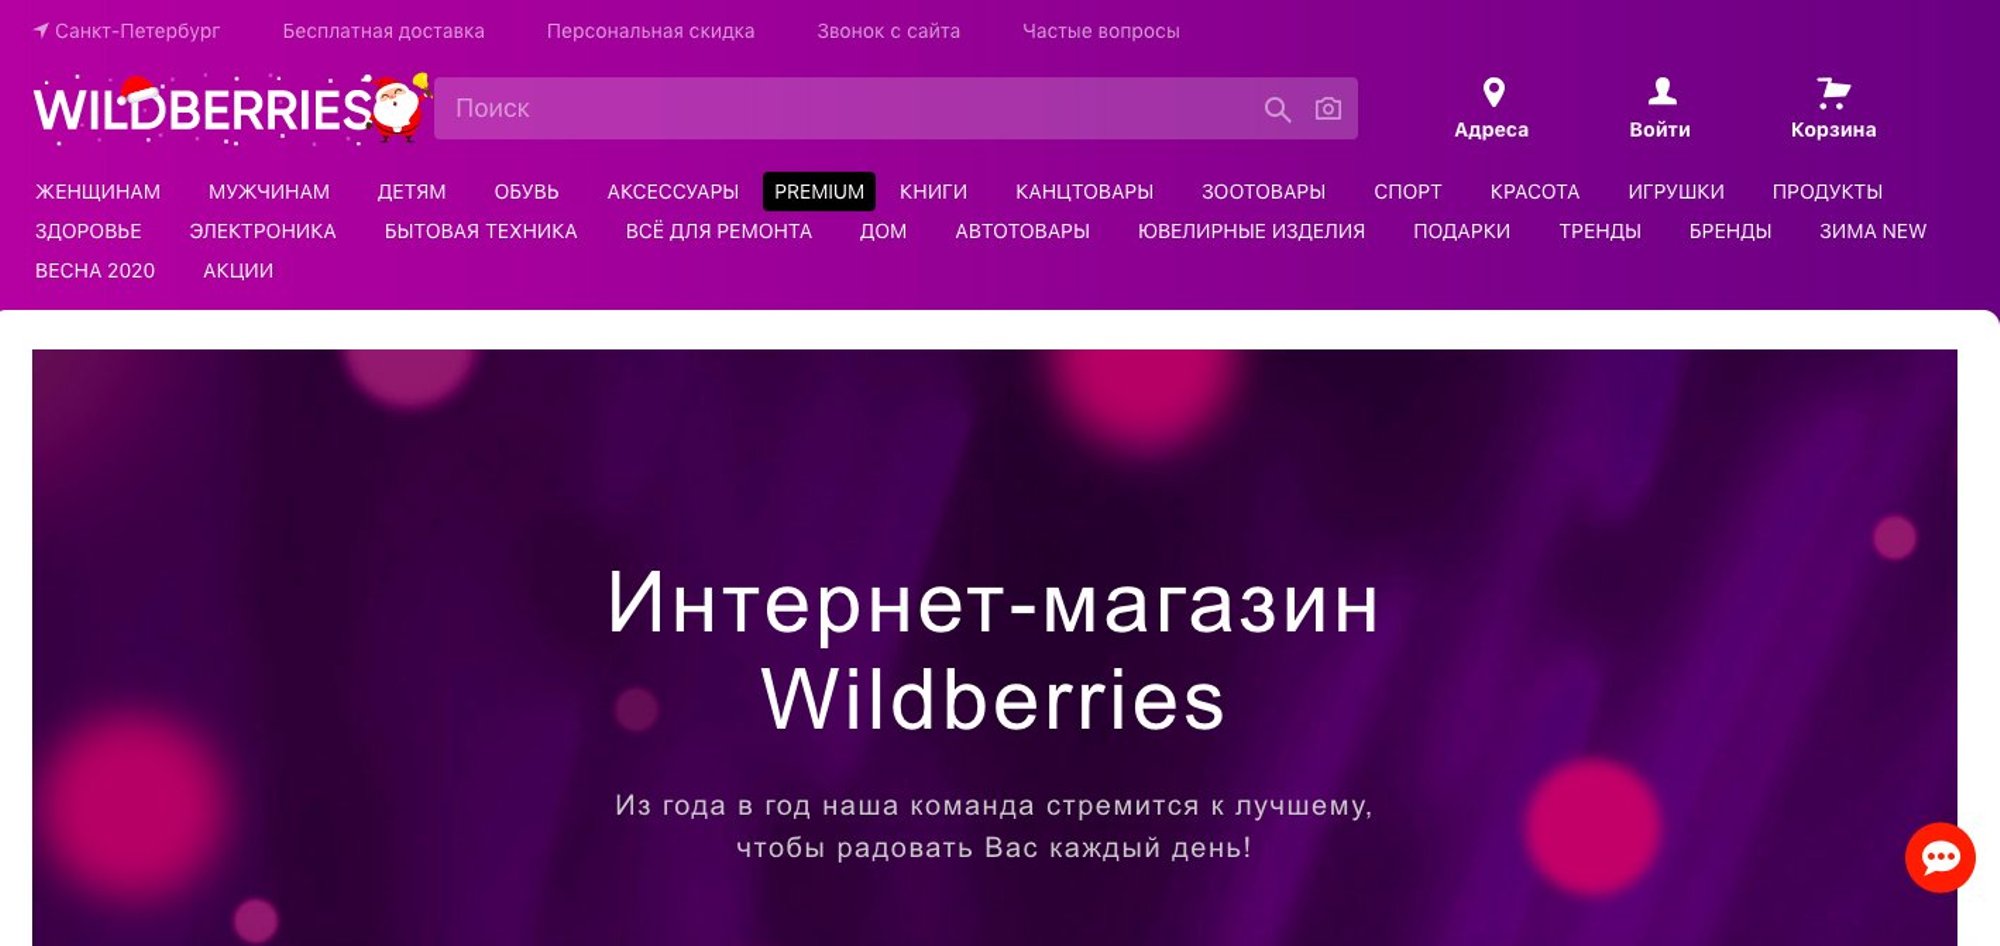 Https portal wildberries ru. Wildberries магазин. Wildberries год. Что с сайтом вайлдберриз. Реклама вайлдберриз.